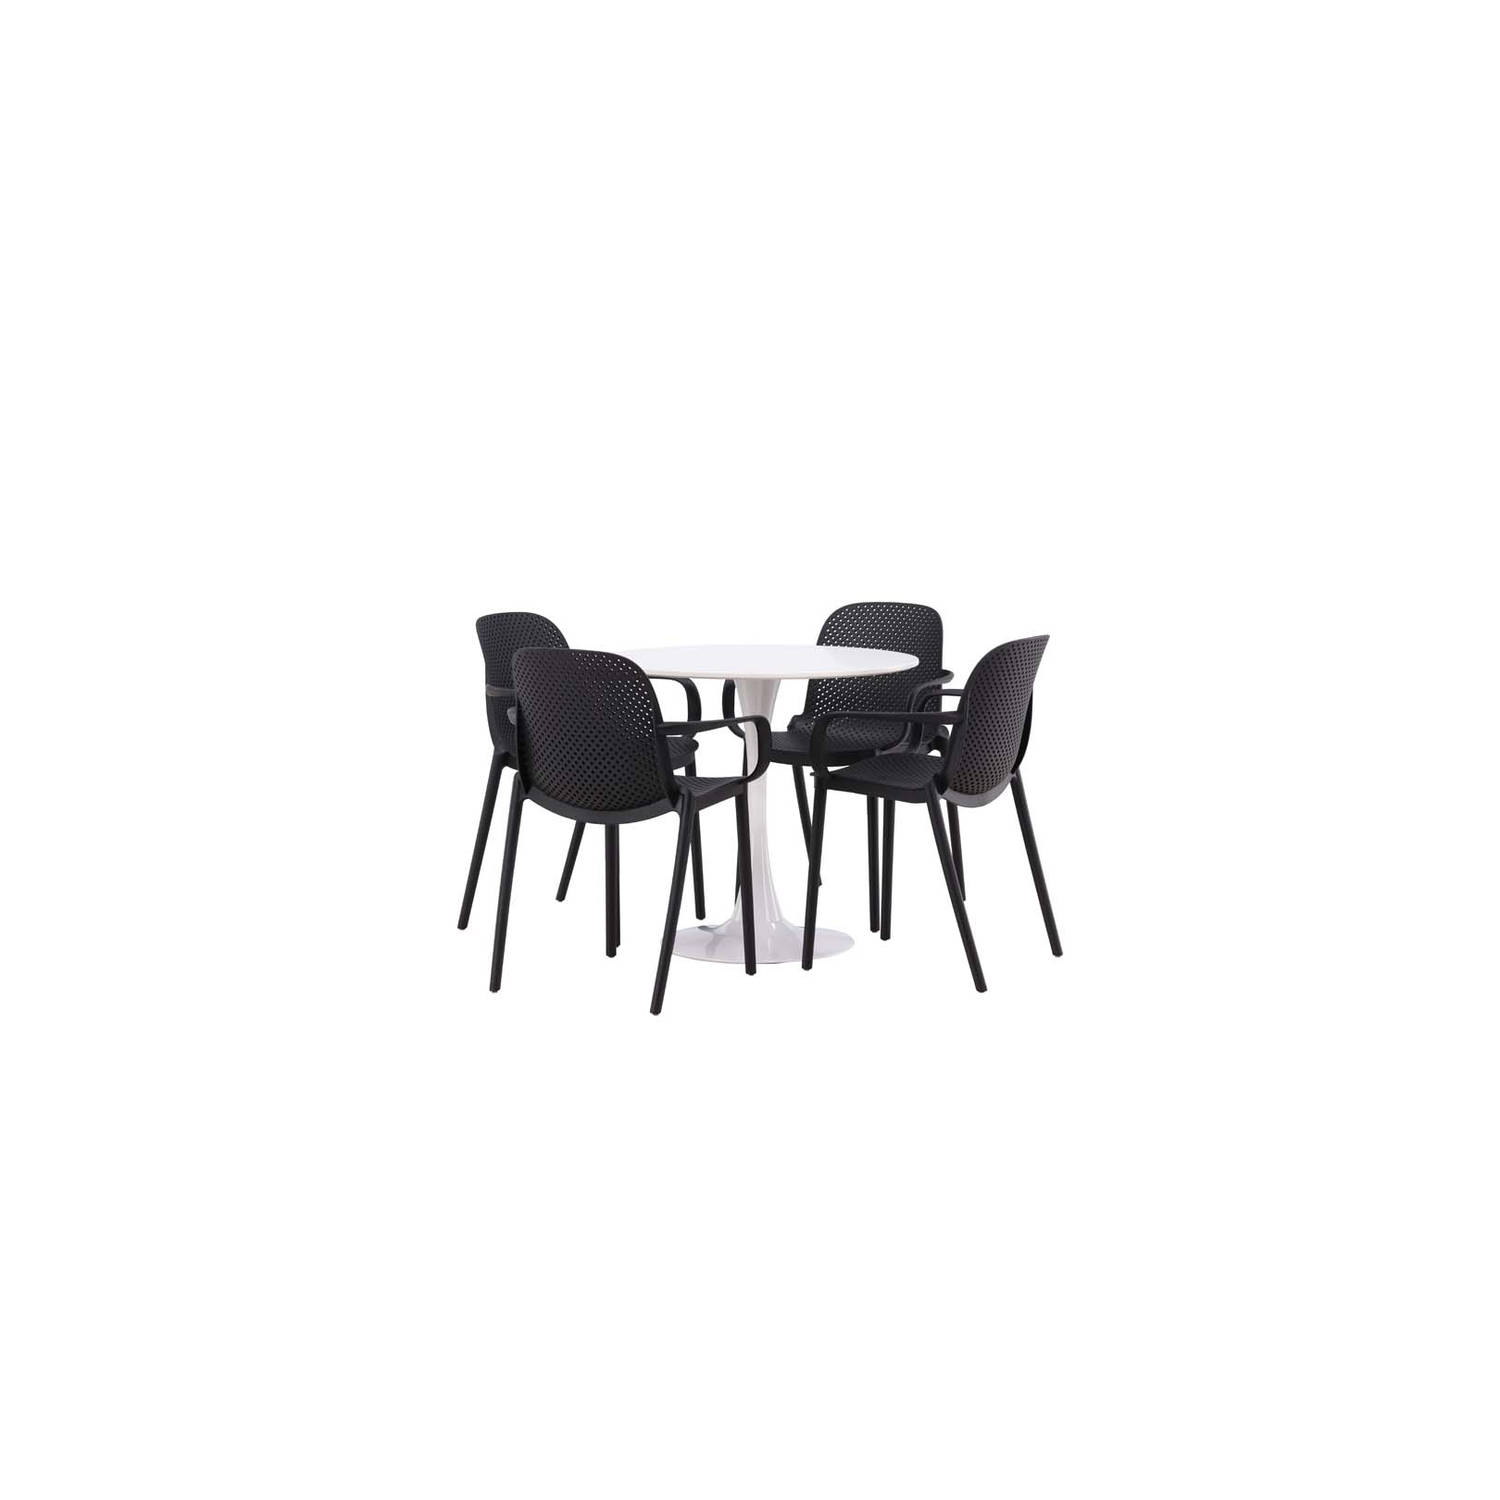 Hamden eethoek tafel wit en 4 baltimore stoelen zwart.